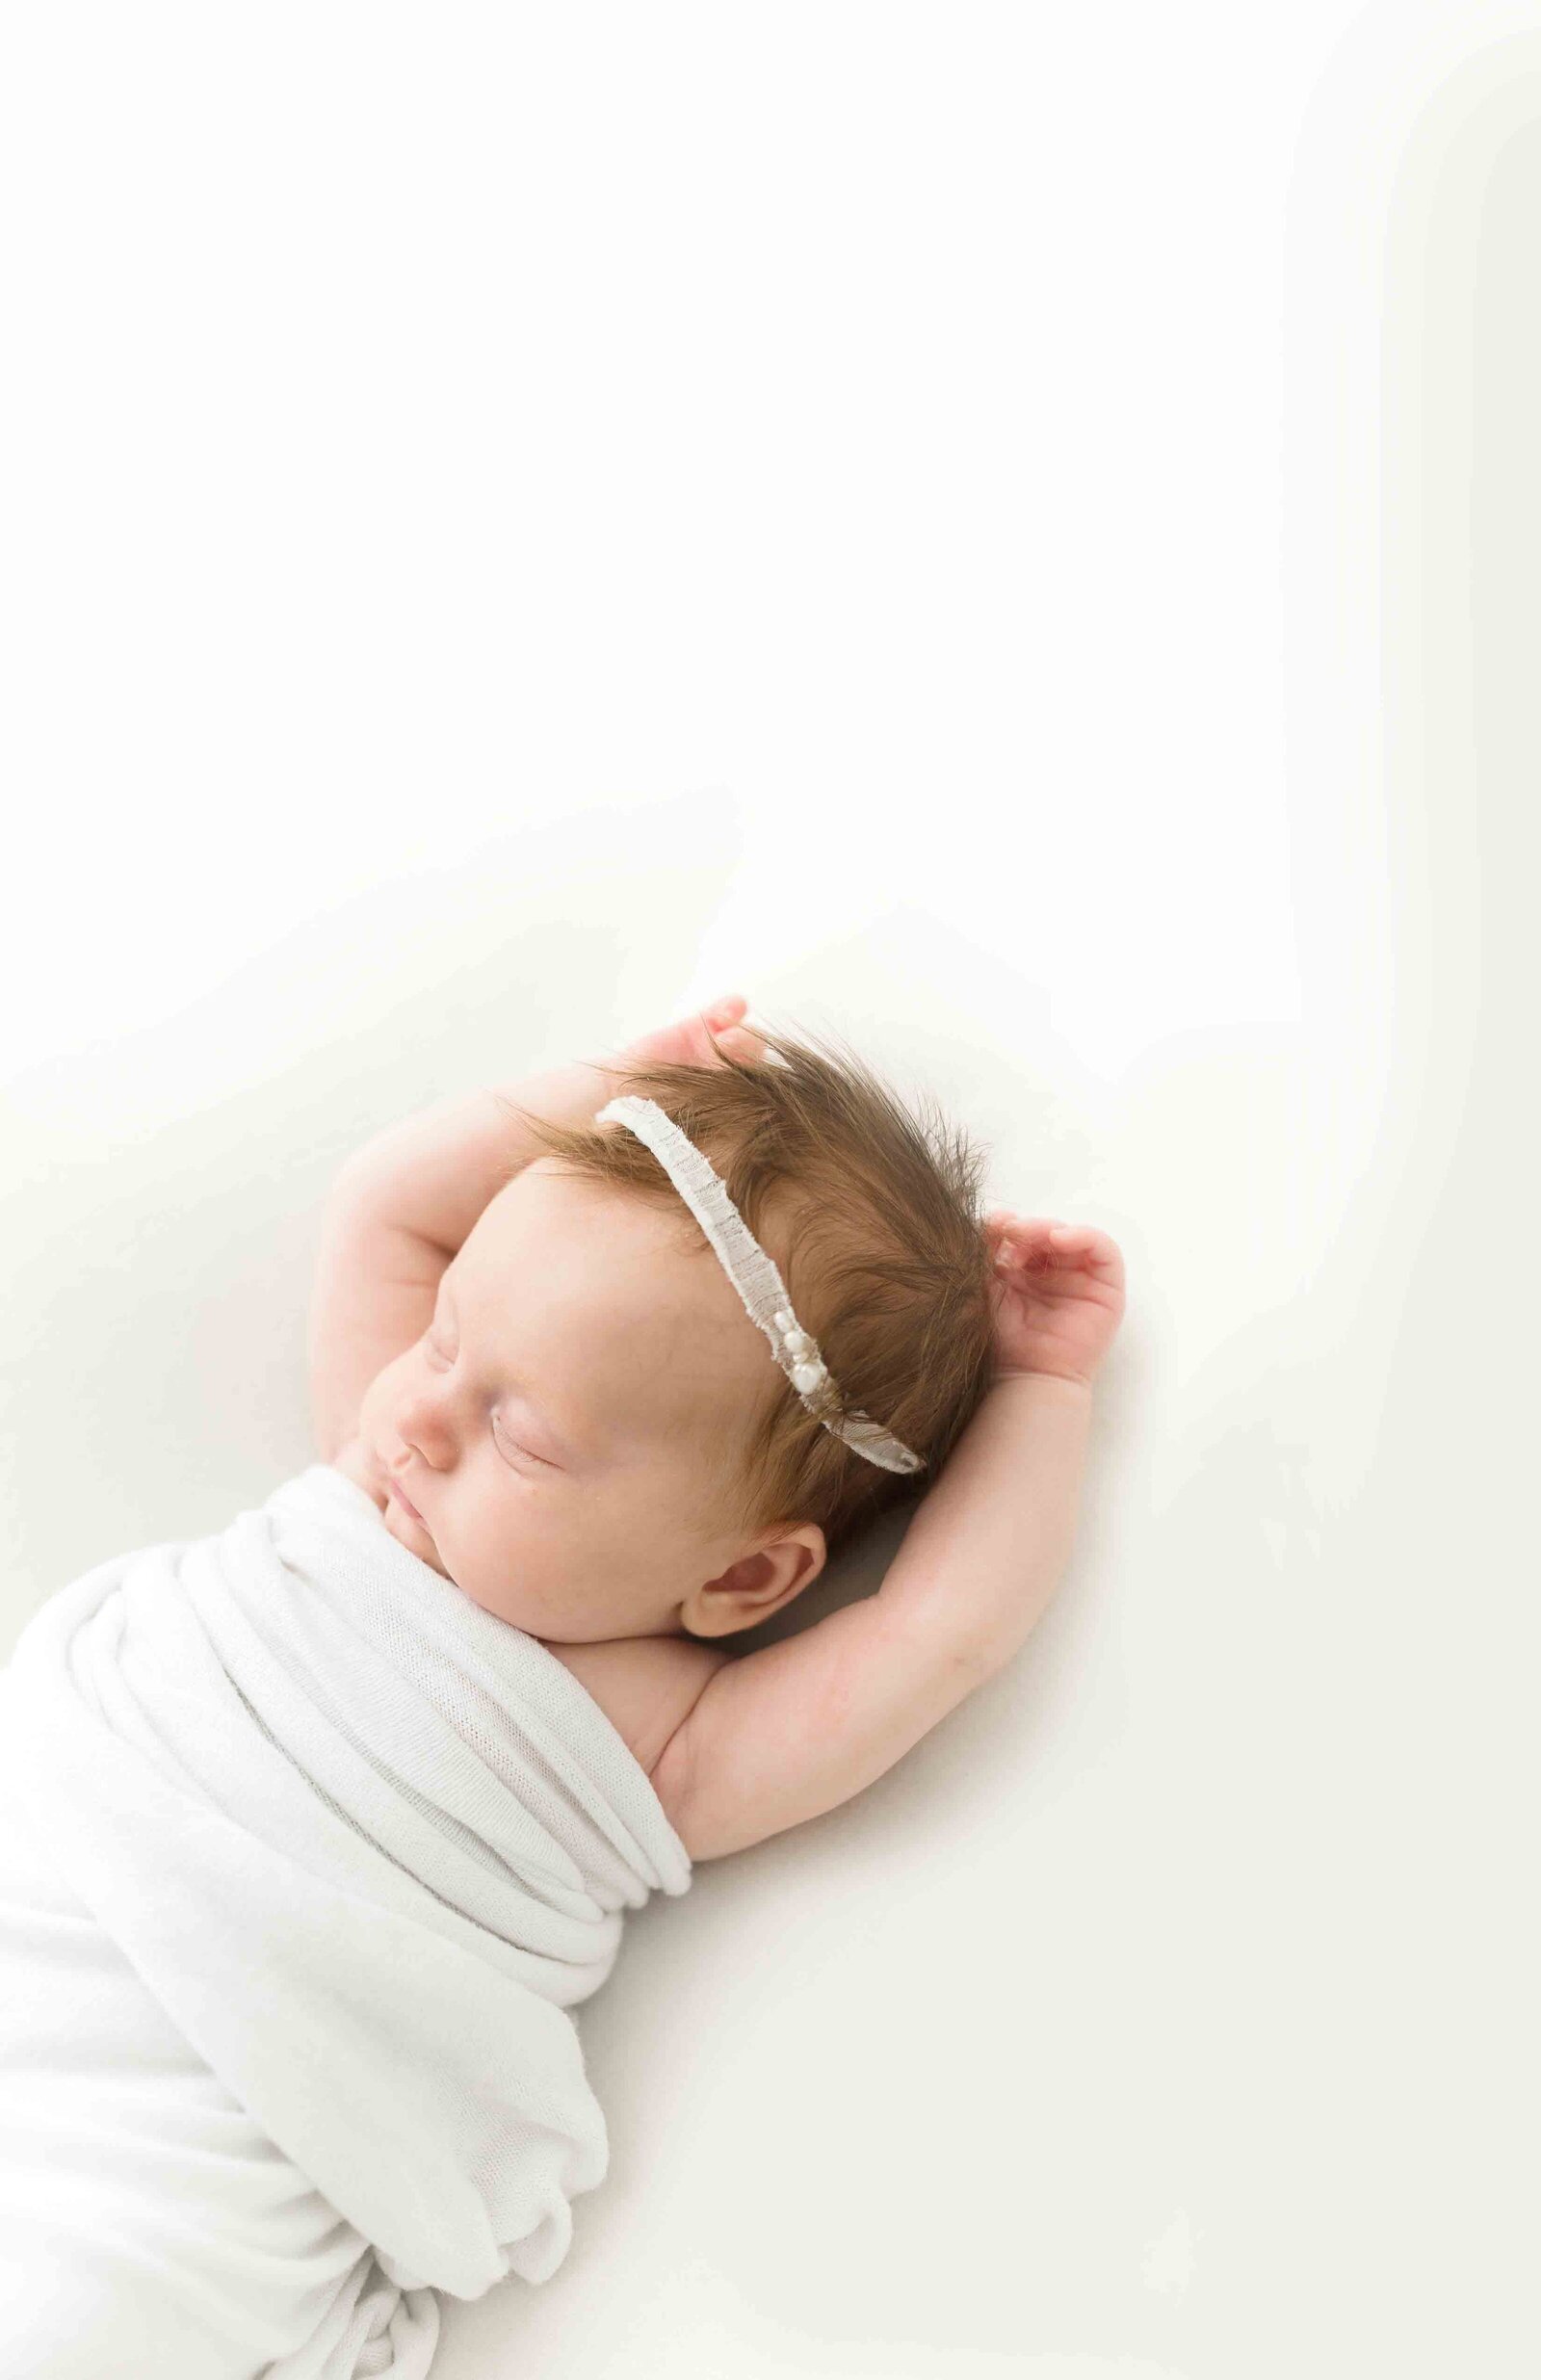 Schlafendes neugeborenes Mädchen mit ausgestreckten Armen in weißer Decke und mit weißem Haarband.